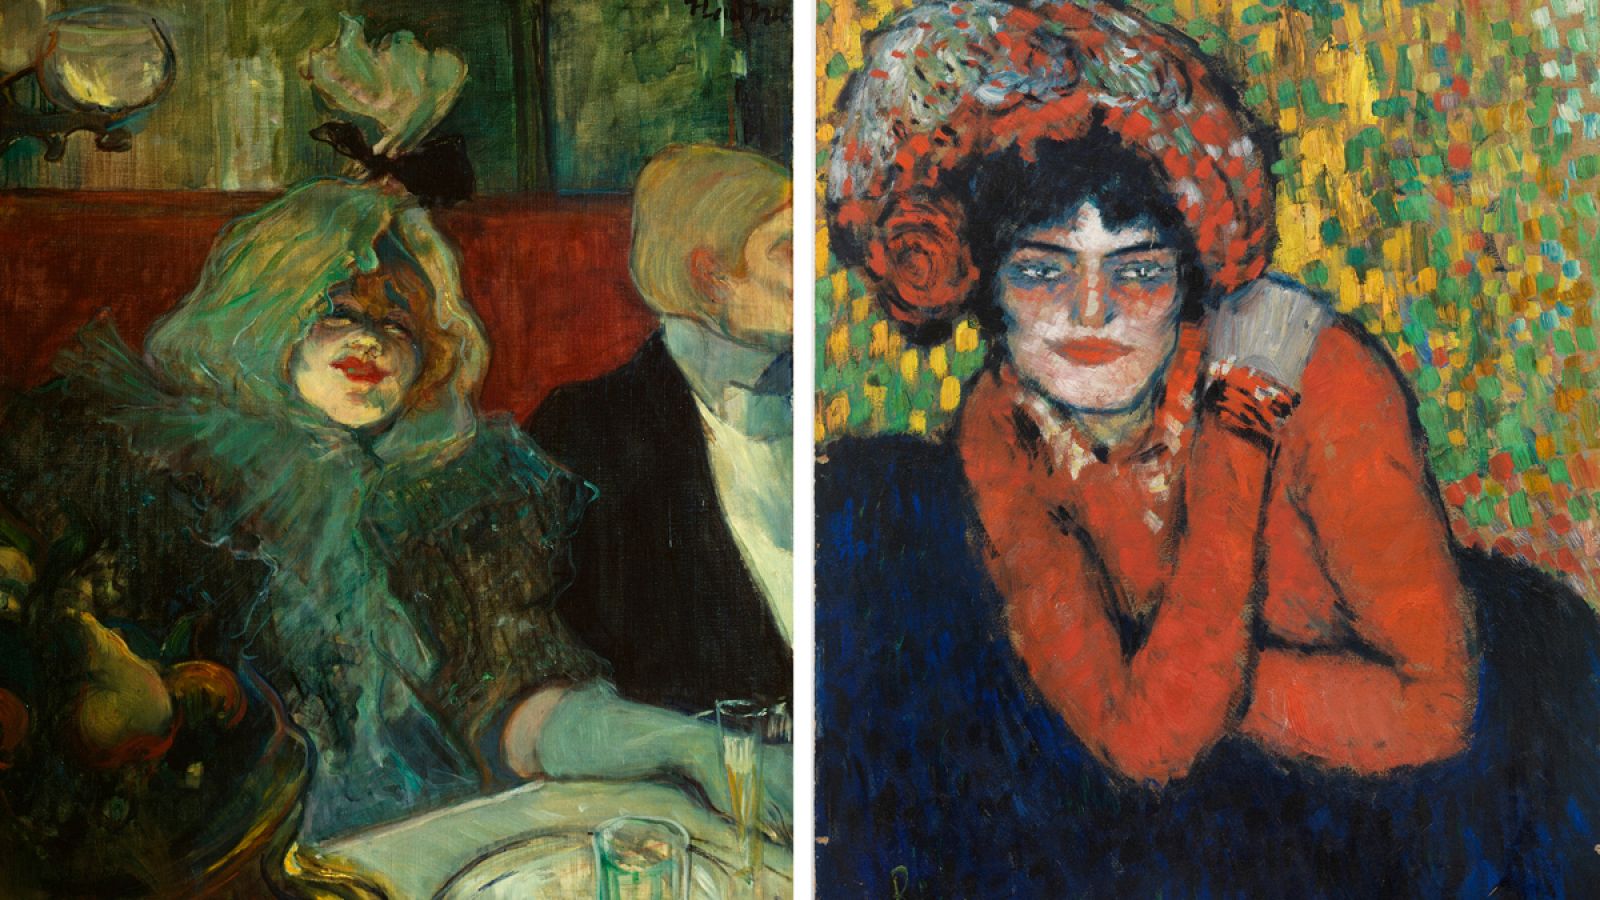 En un reservado', de Lautrec (izq) y 'La espera', de Picasso (dcha), una propuesta comparativa del Thyssen